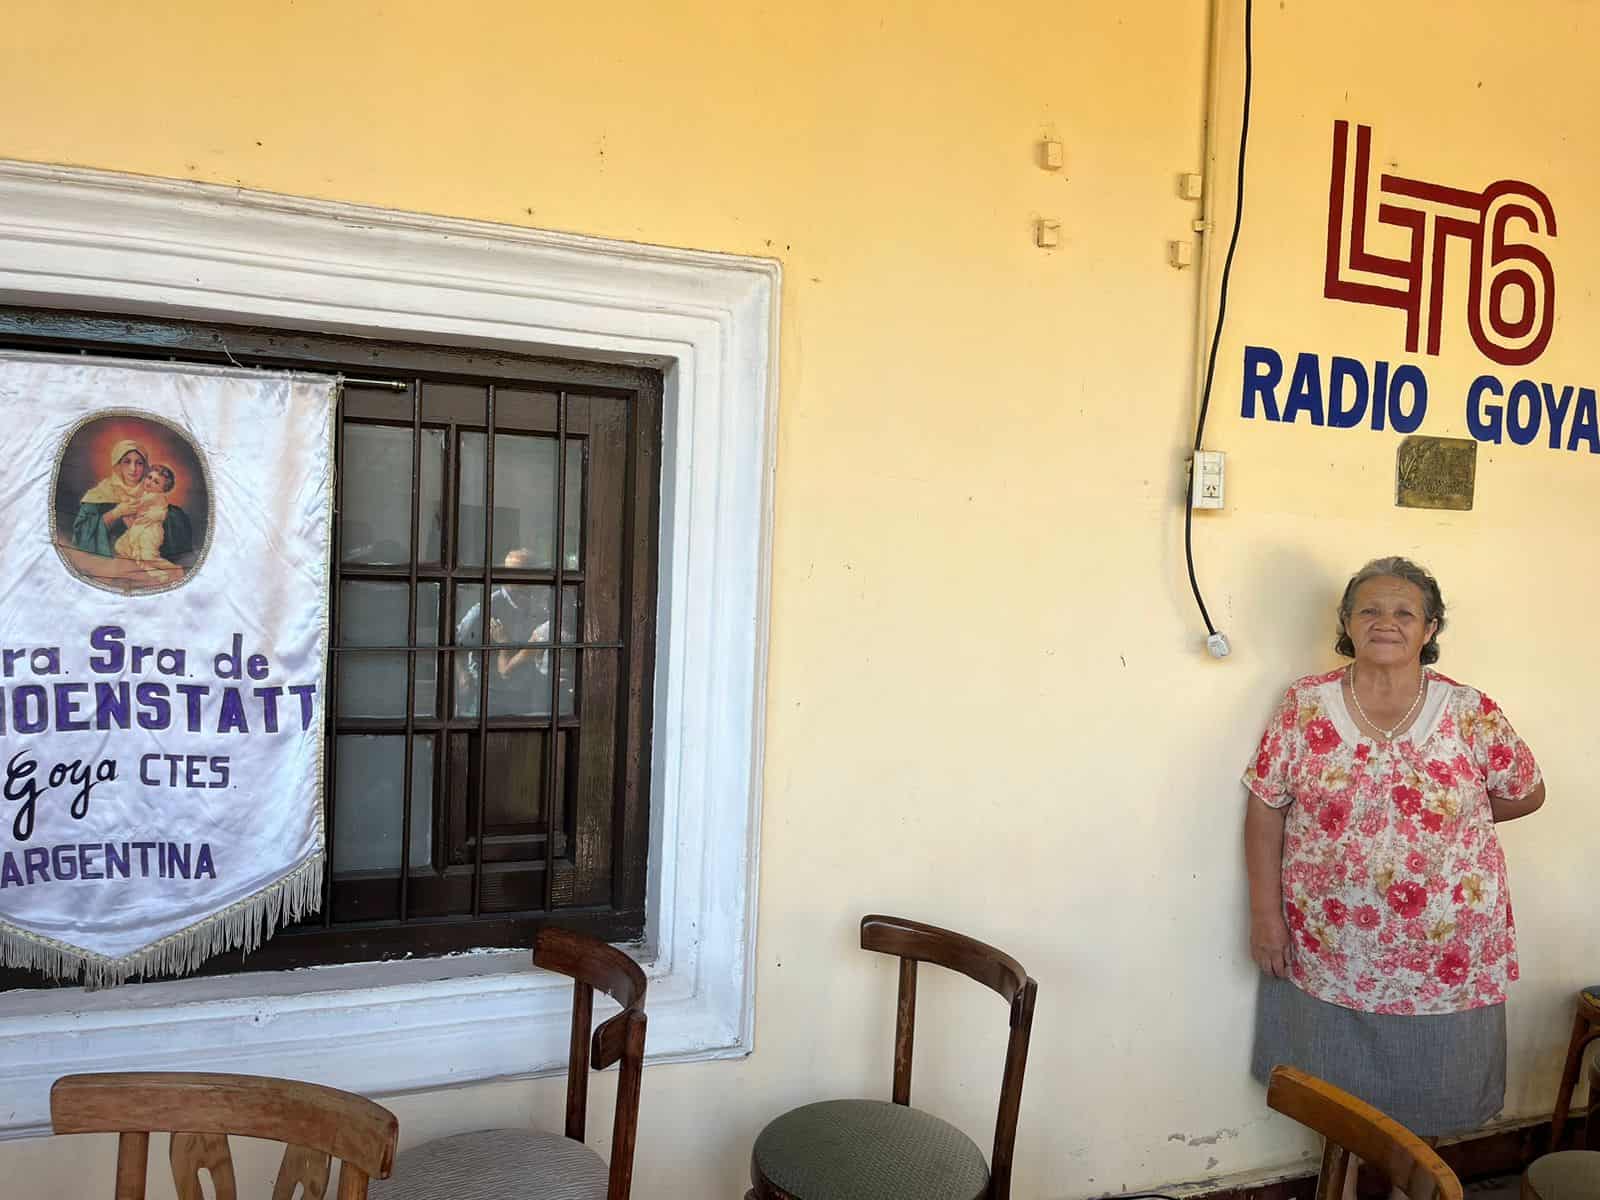 El 31 de enero, L.T.6 Radio Goya, cumplió 71 años y, como cada año, se celebró una misa de acción de gracias, en la que estaban presentes misioneras de la Campaña con su bandera